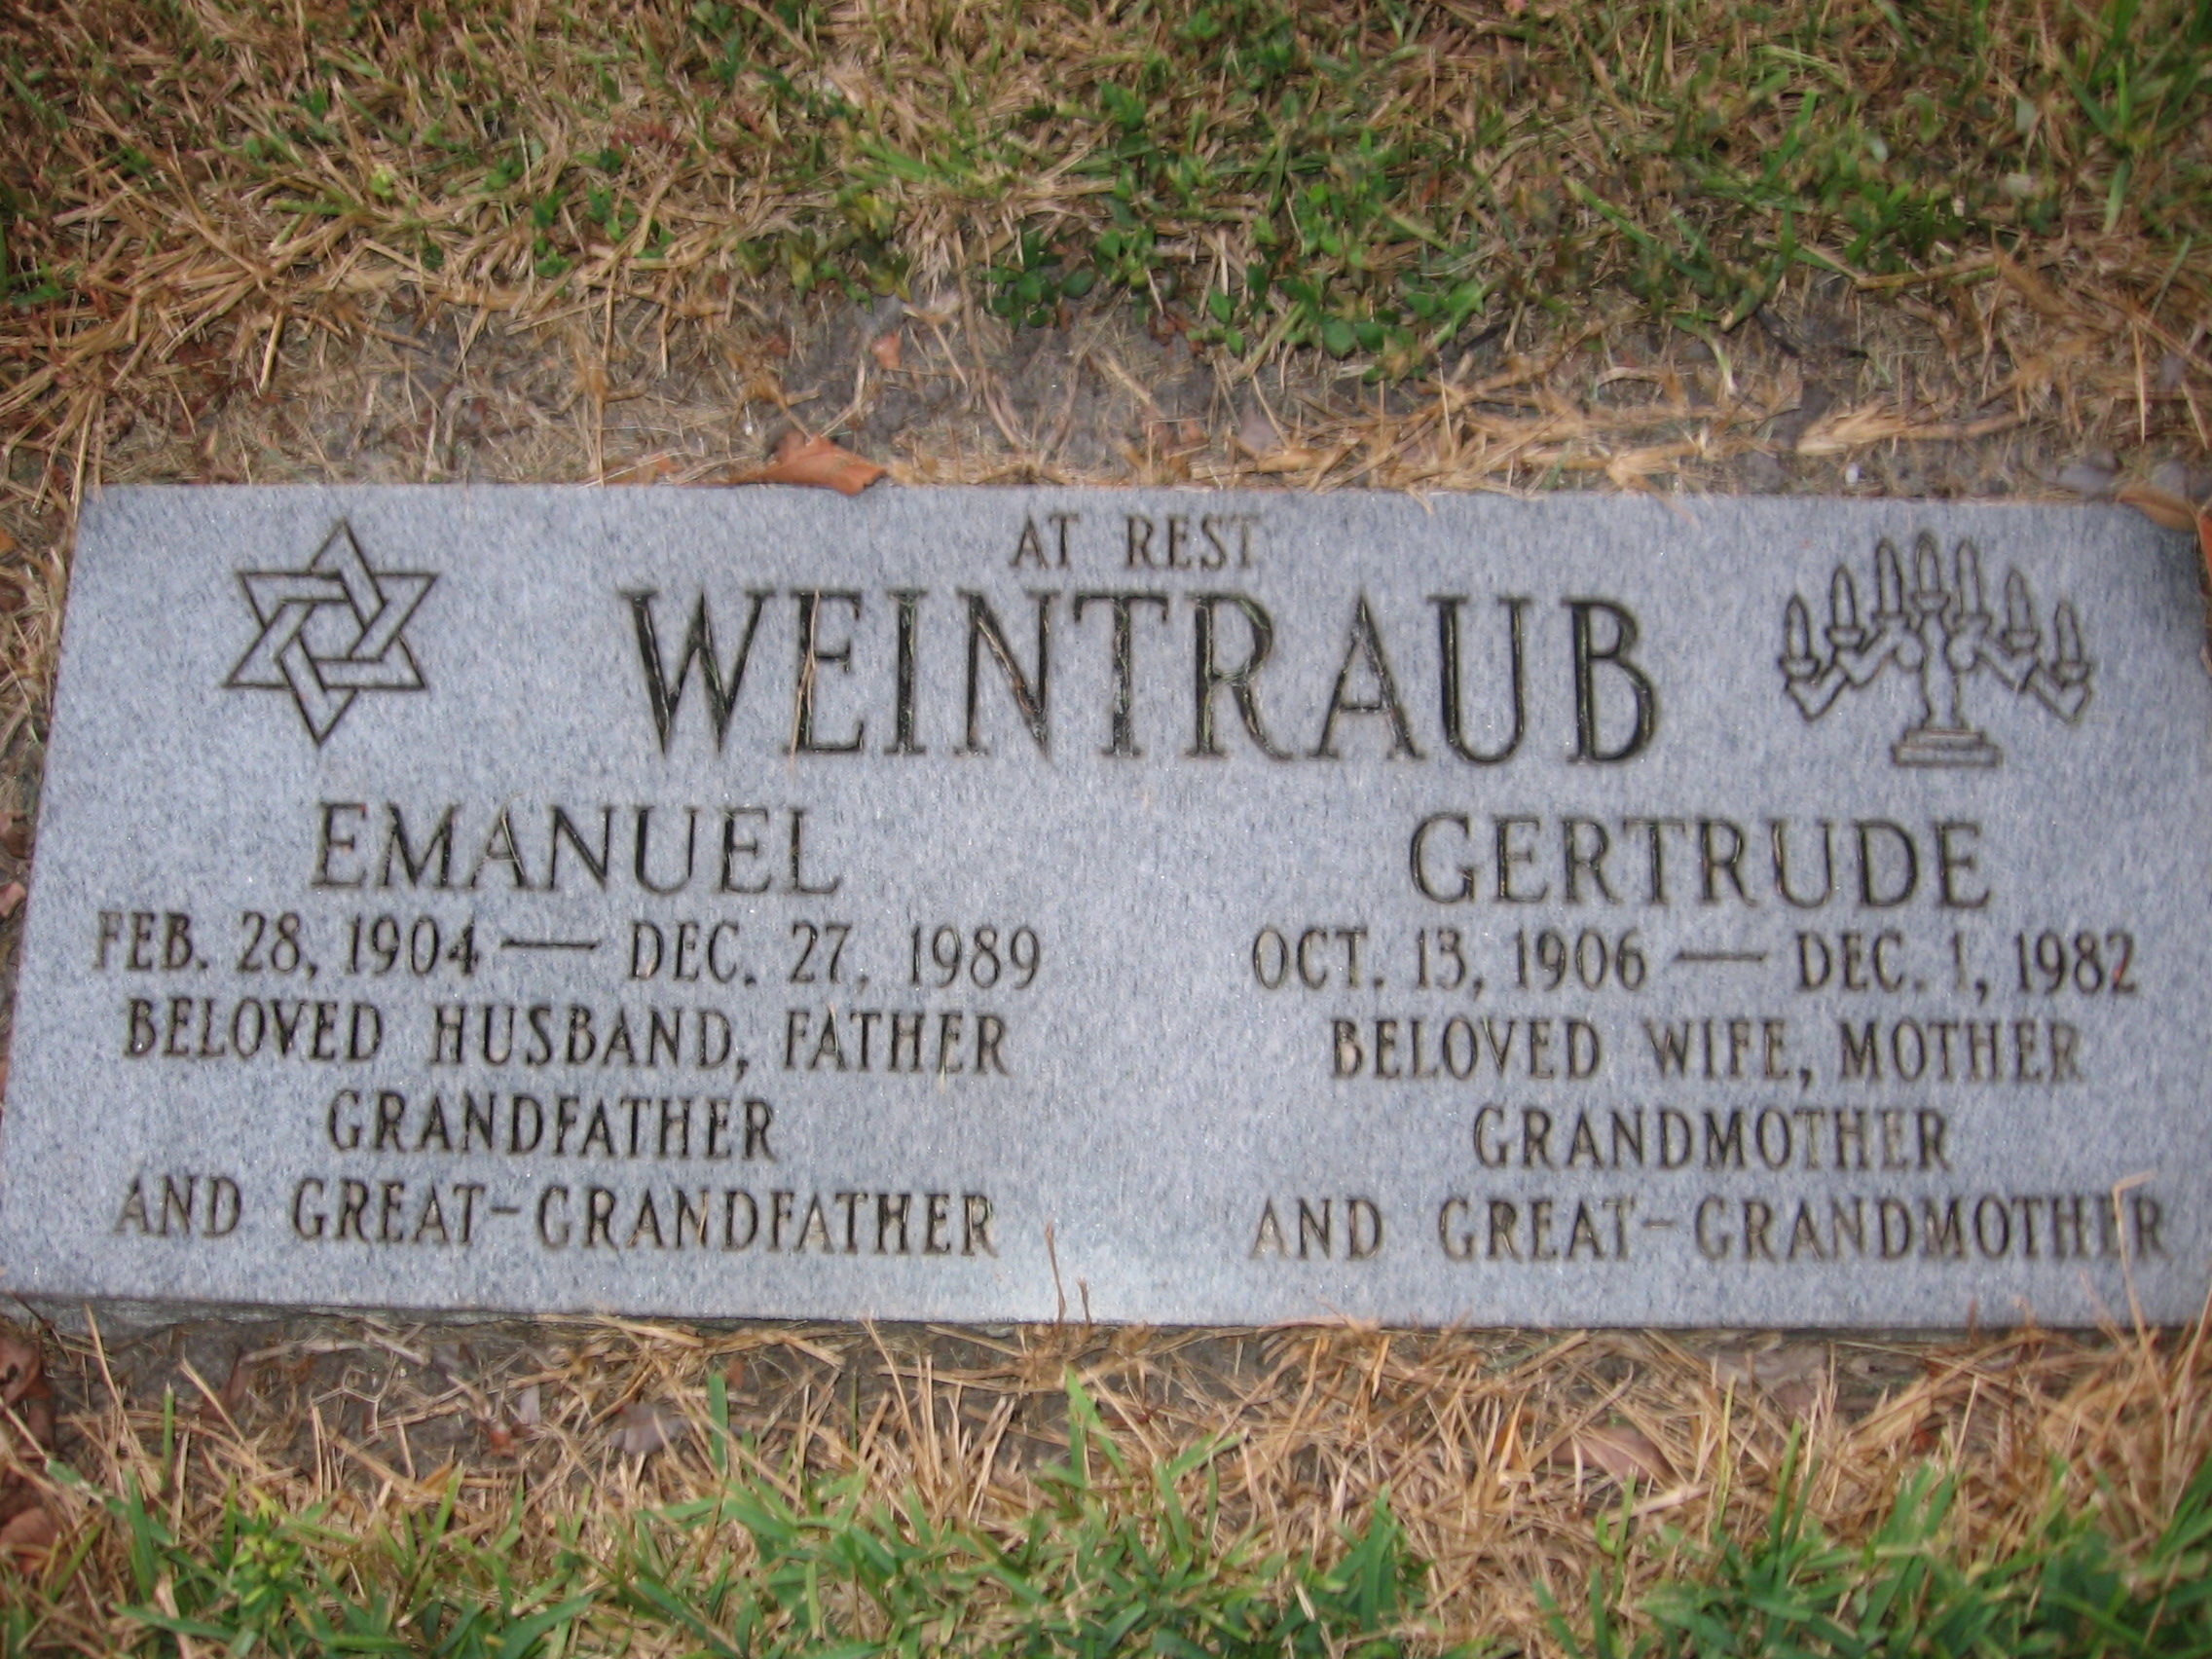 Gertrude Weintraub